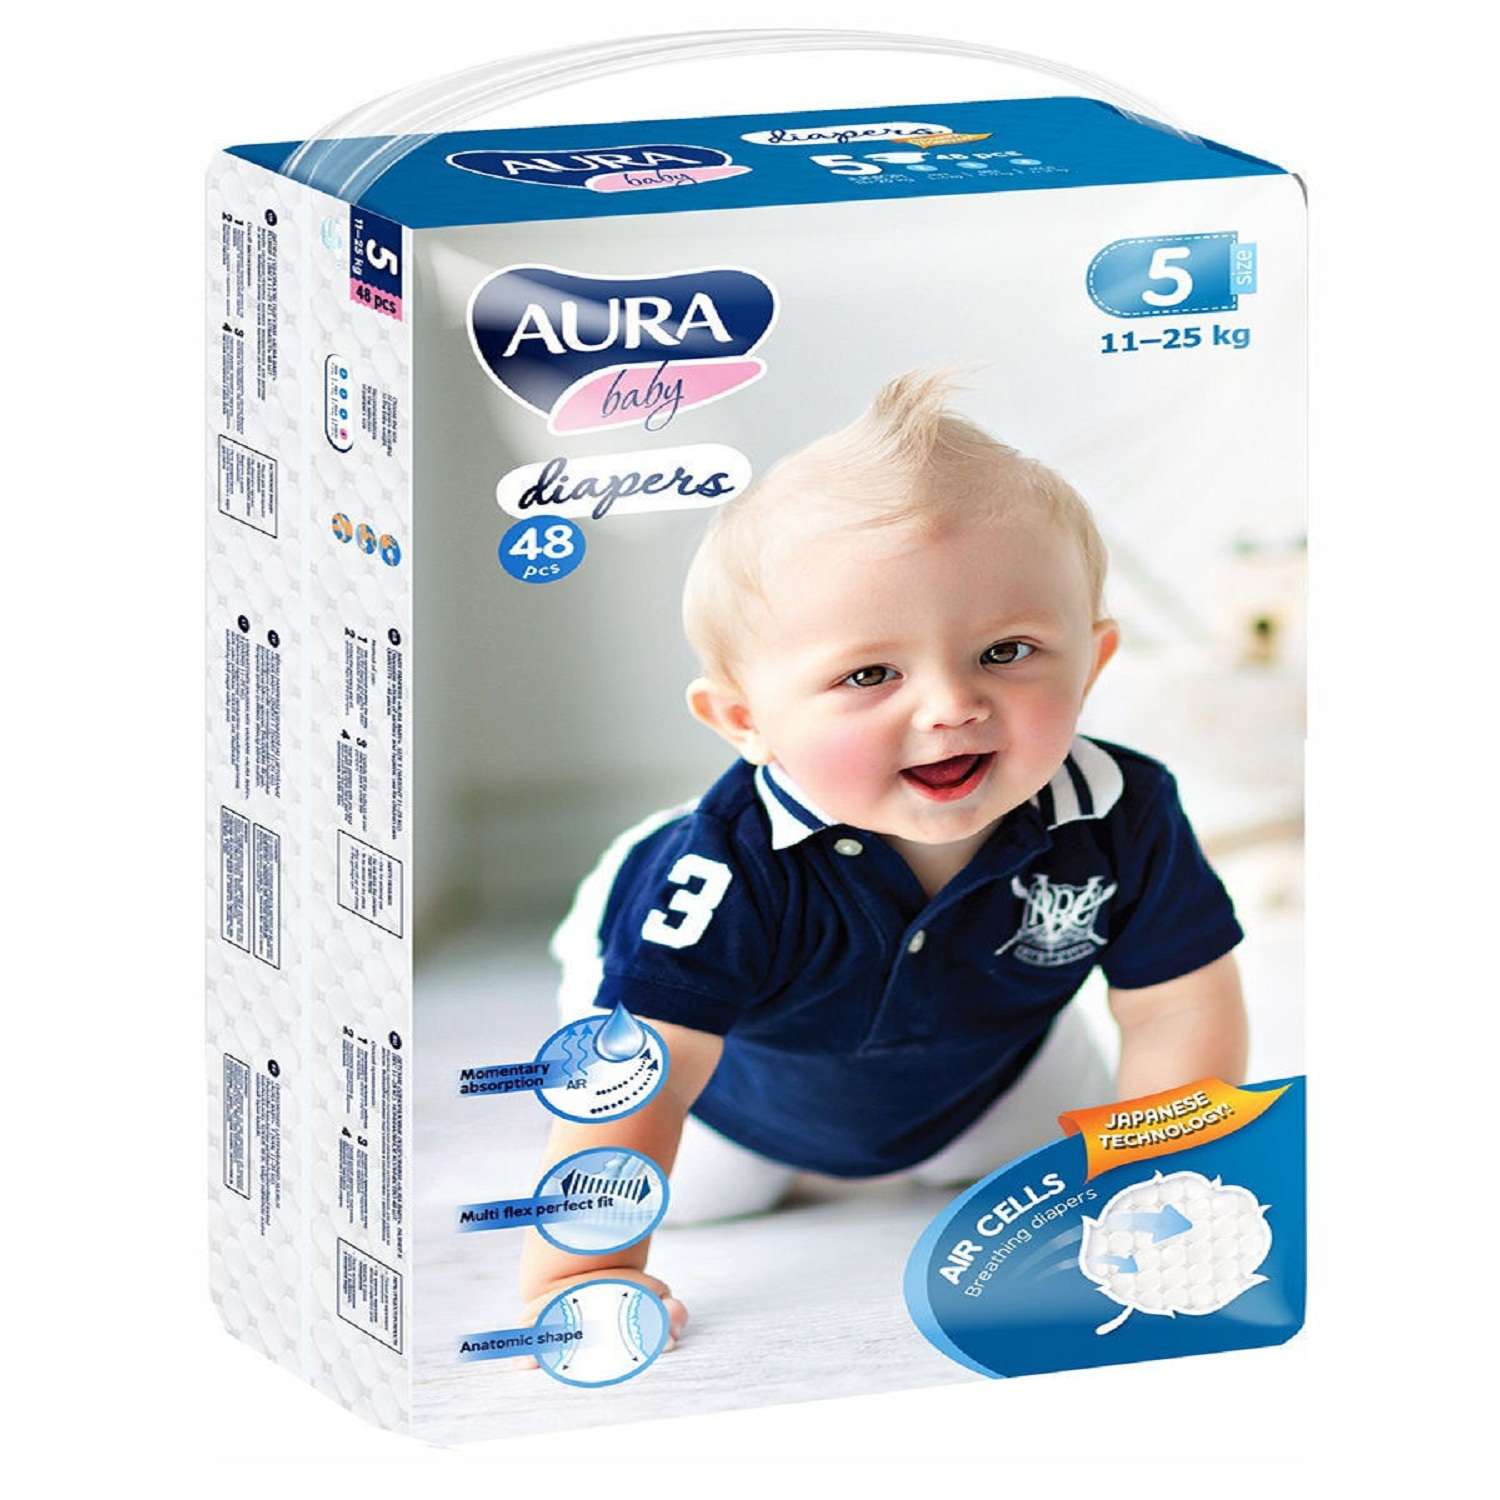 Подгузники AURA BABY одноразовые для детей 5/XL 11-25 кг jambo-pack 48шт - фото 1